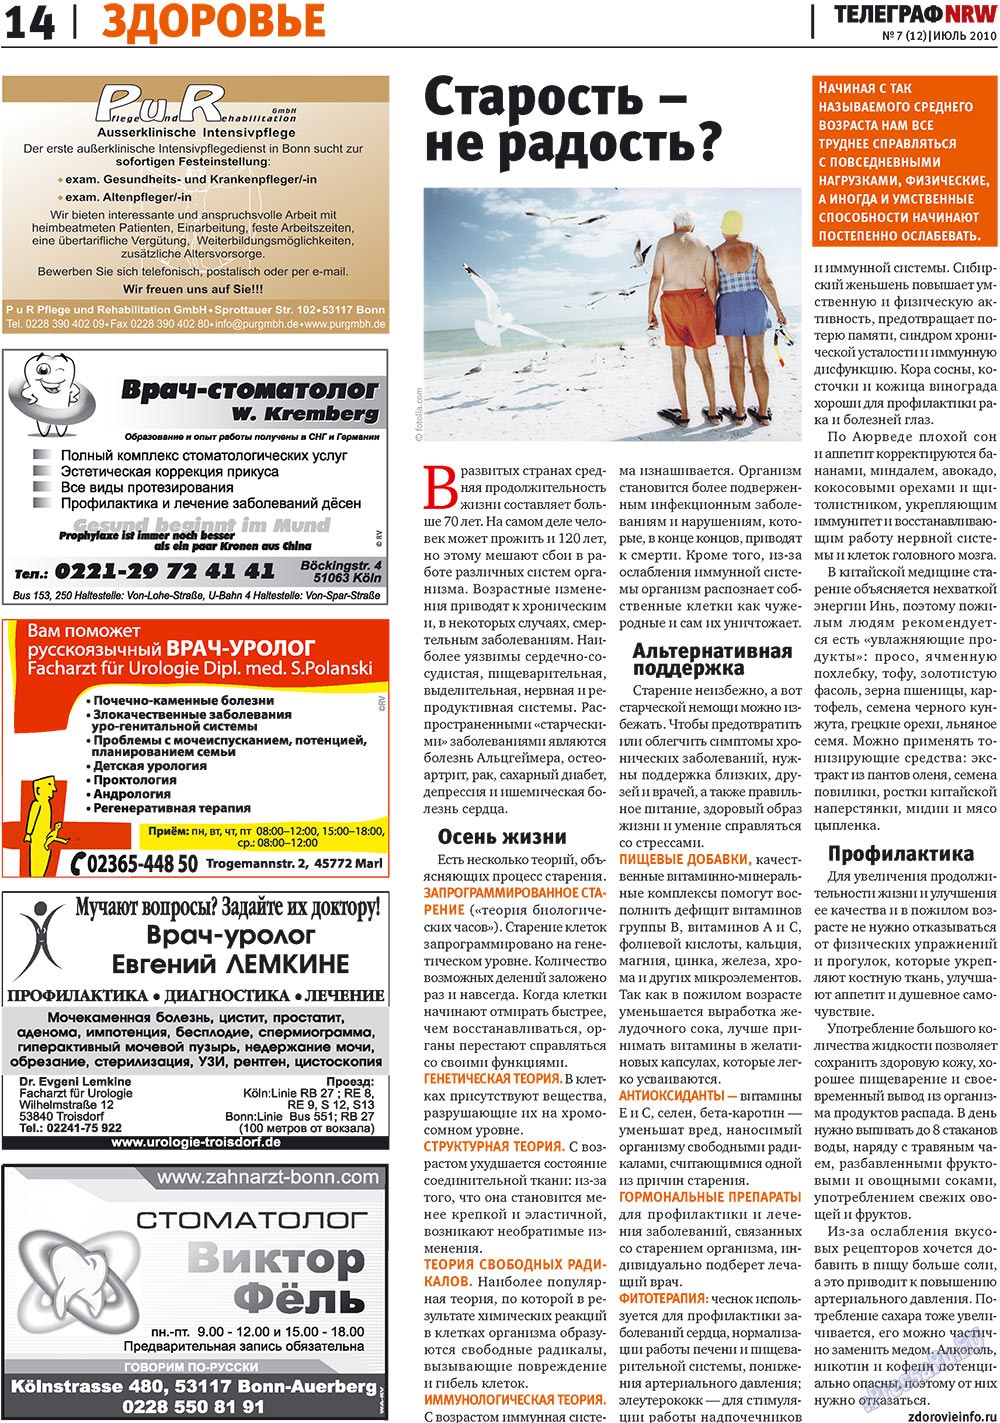 Telegraf NRW (Zeitung). 2010 Jahr, Ausgabe 7, Seite 14